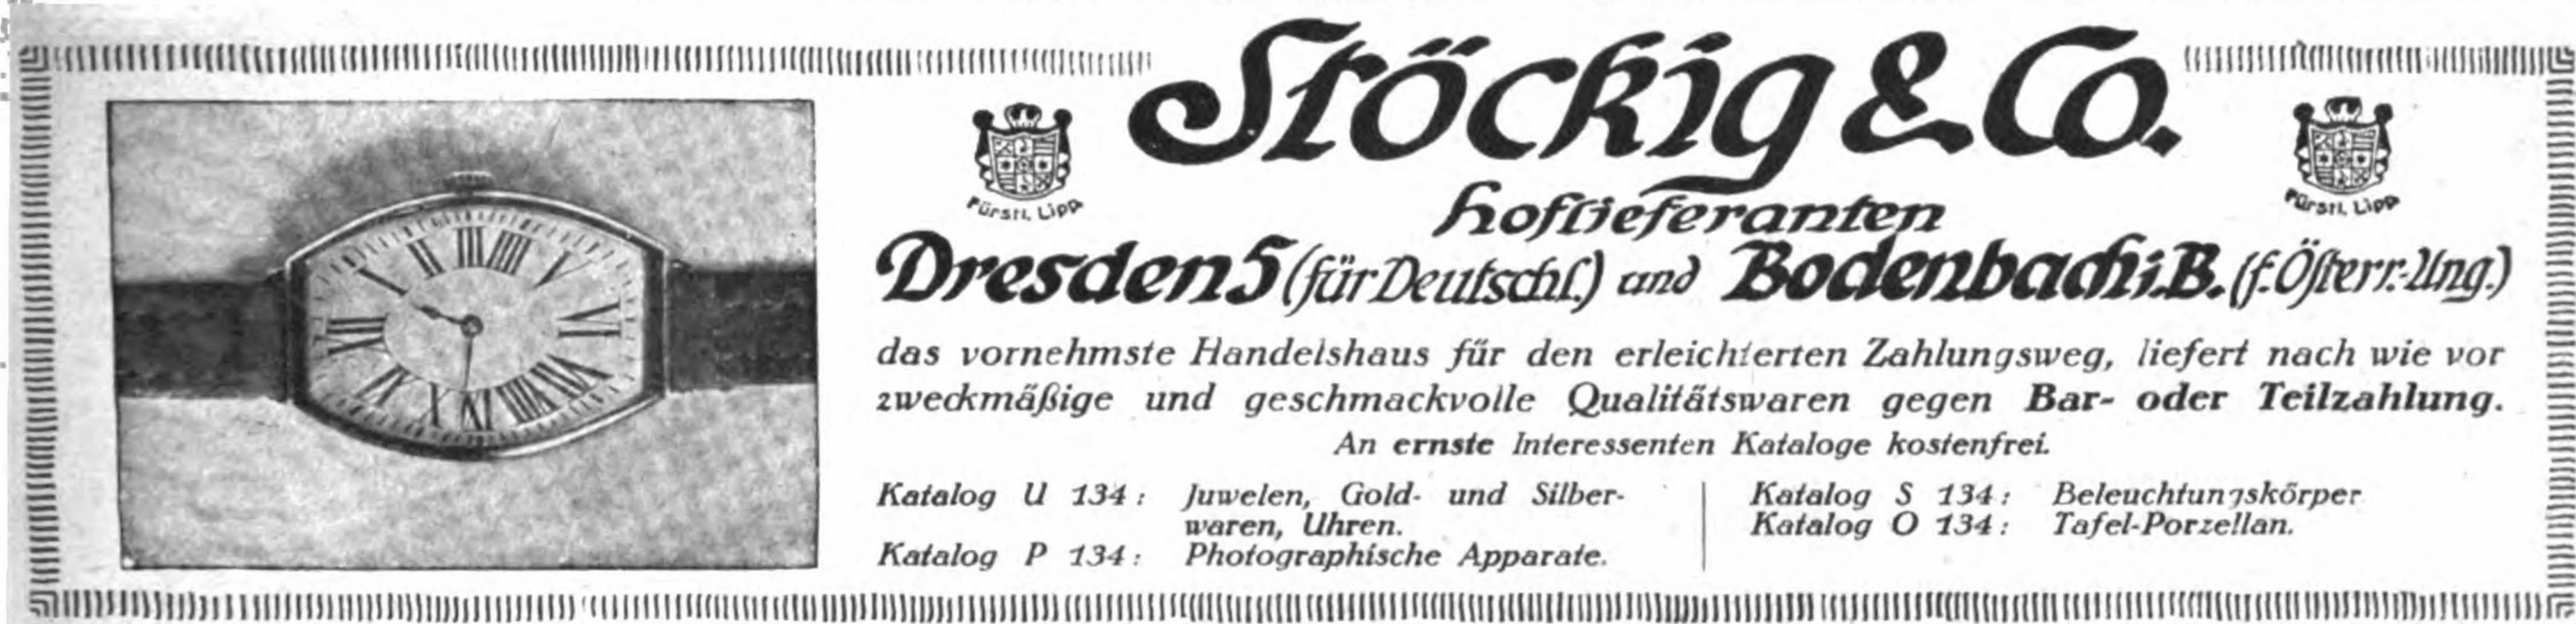 Stoecking 1917 680.jpg